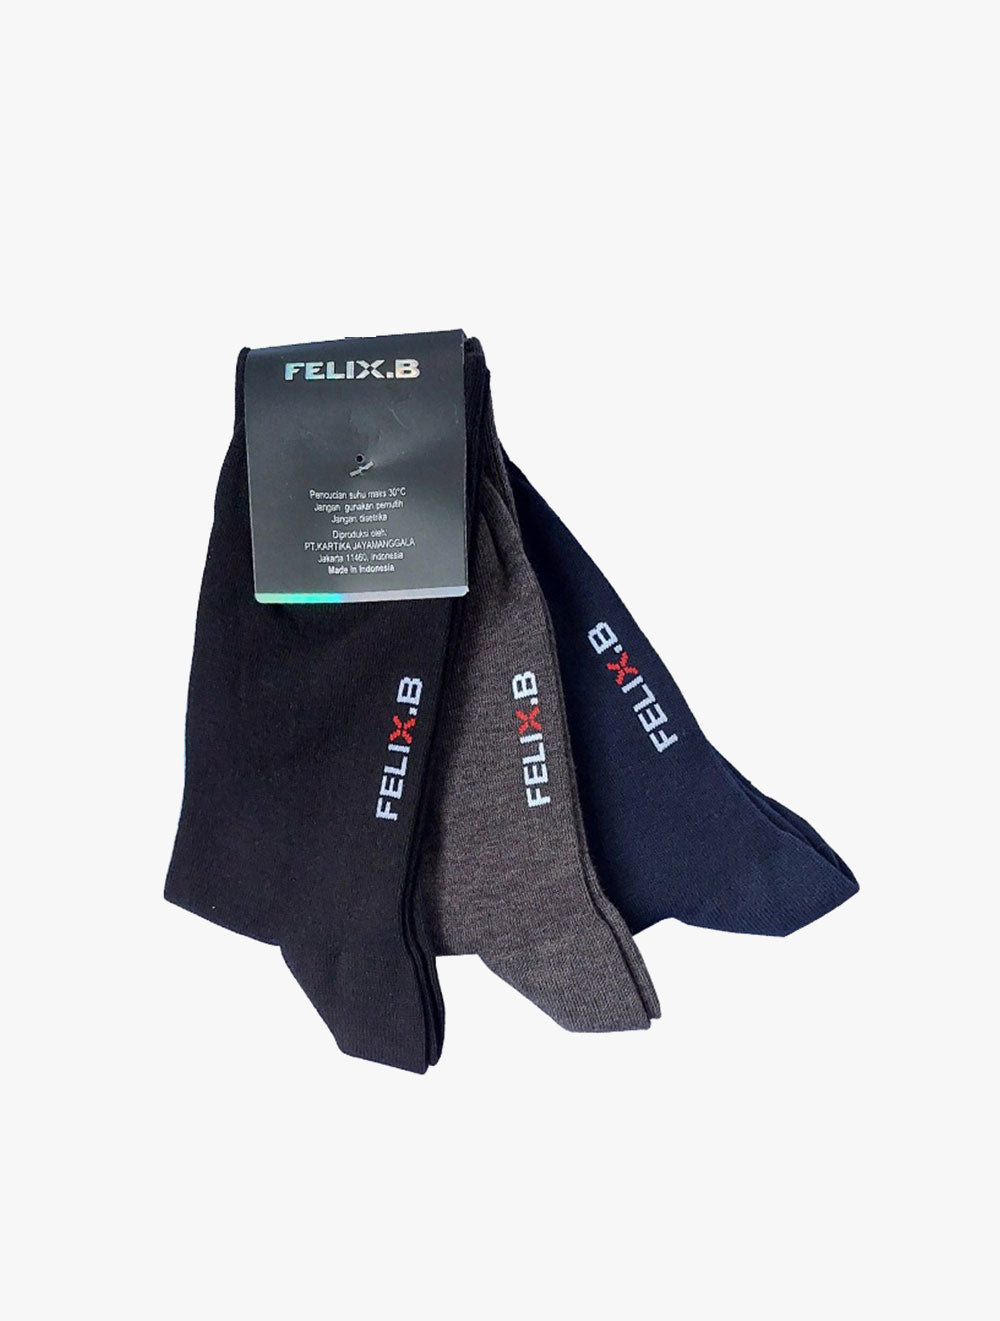 FELIX.B
Socks 3in1 - FBSC032